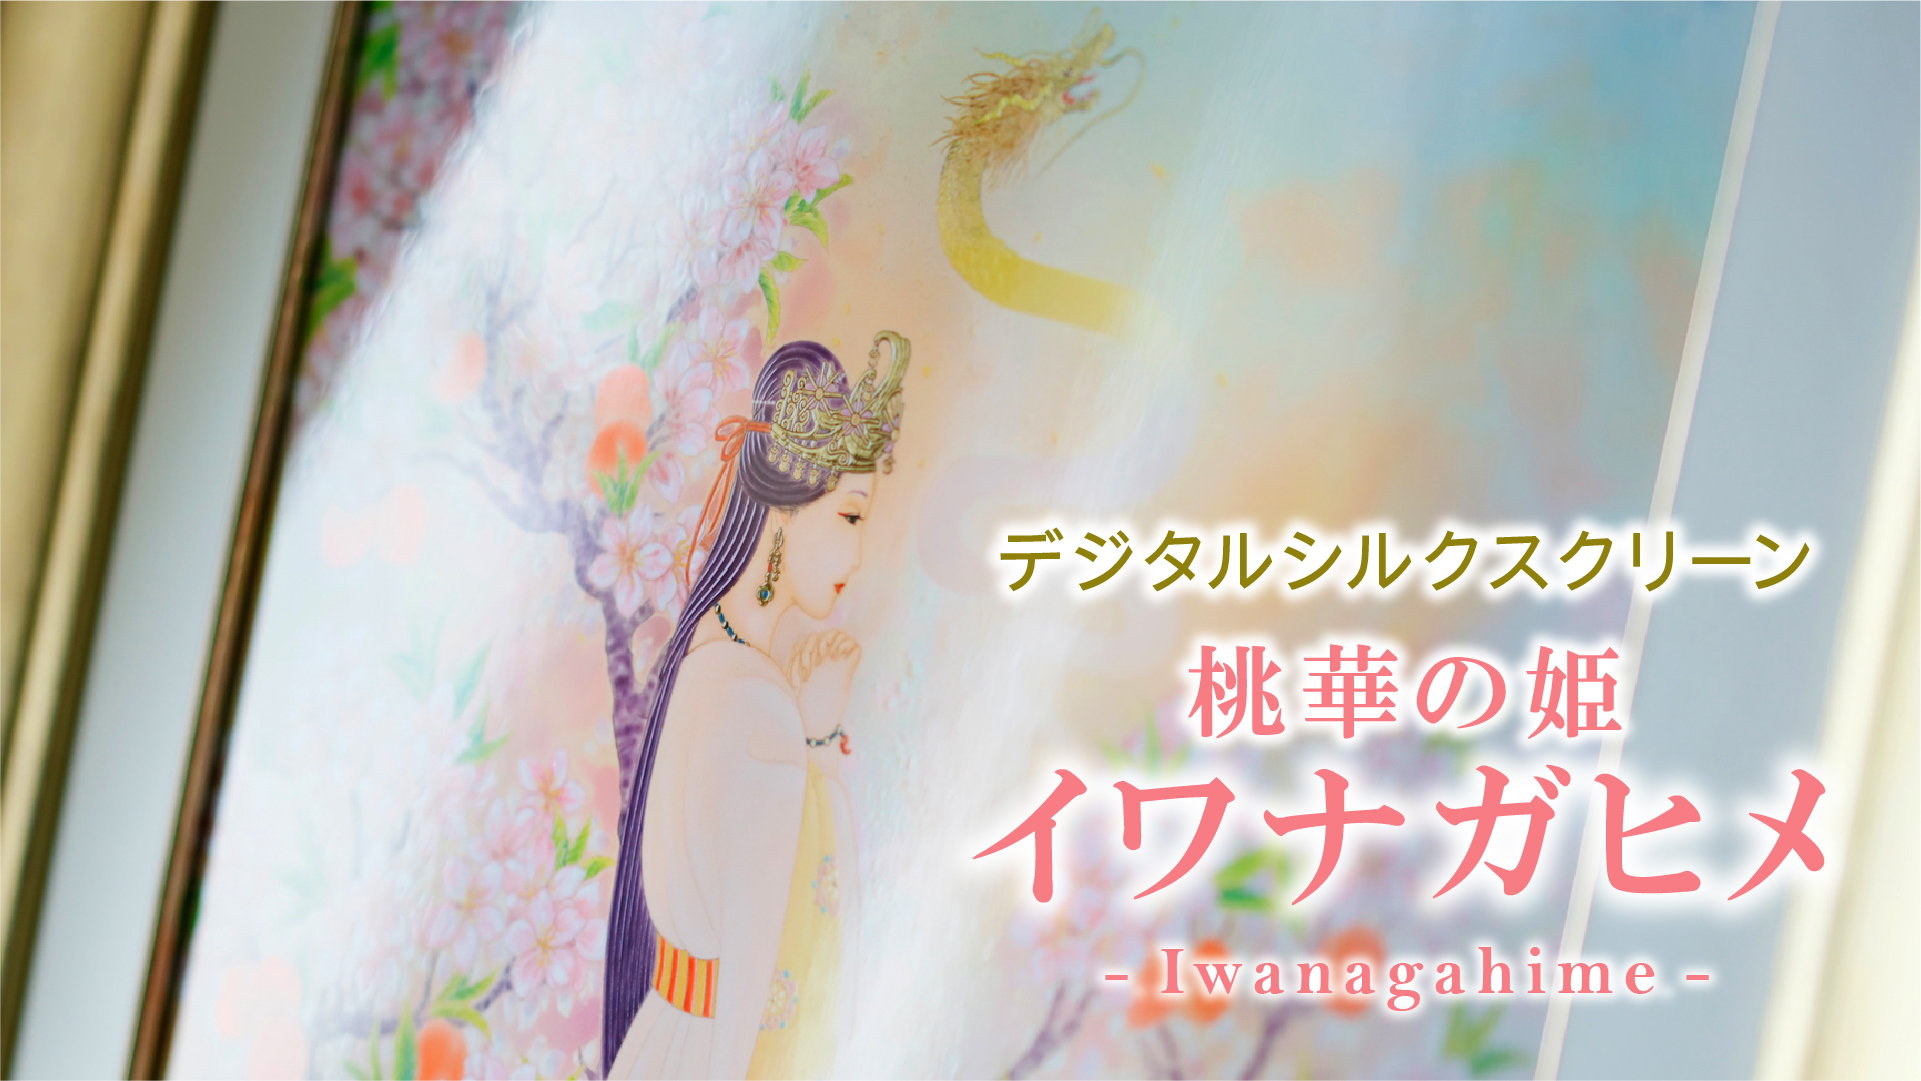 デジタルシルクスクリーン「桃華の姫 イワナガヒメ」複製画は３種類ございます。<br>ぜひ動画でそれぞれの特徴をご覧くださいませ。